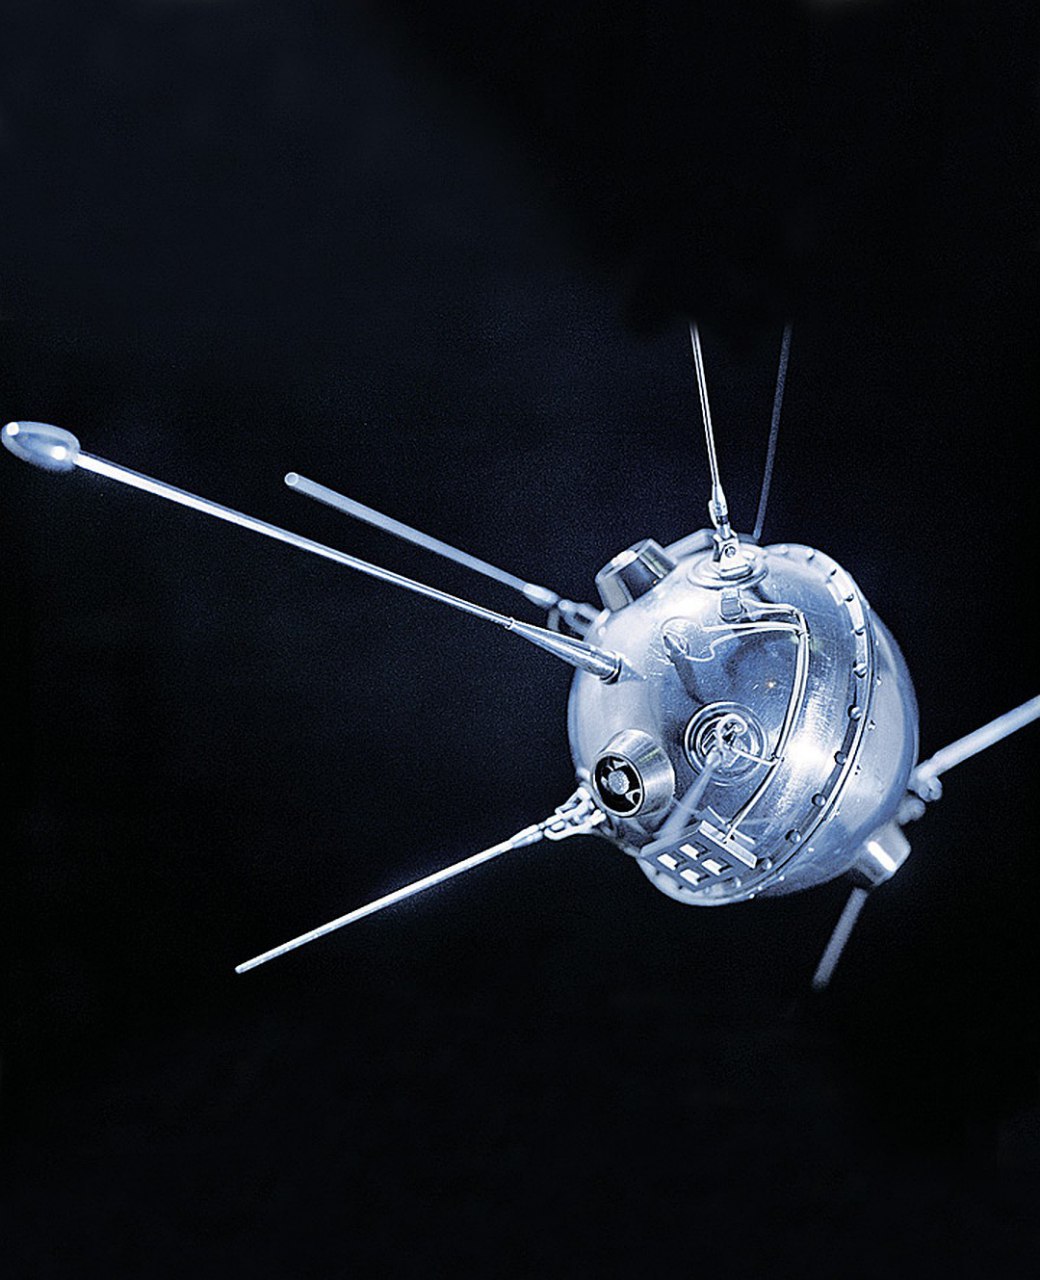 фото советских спутников